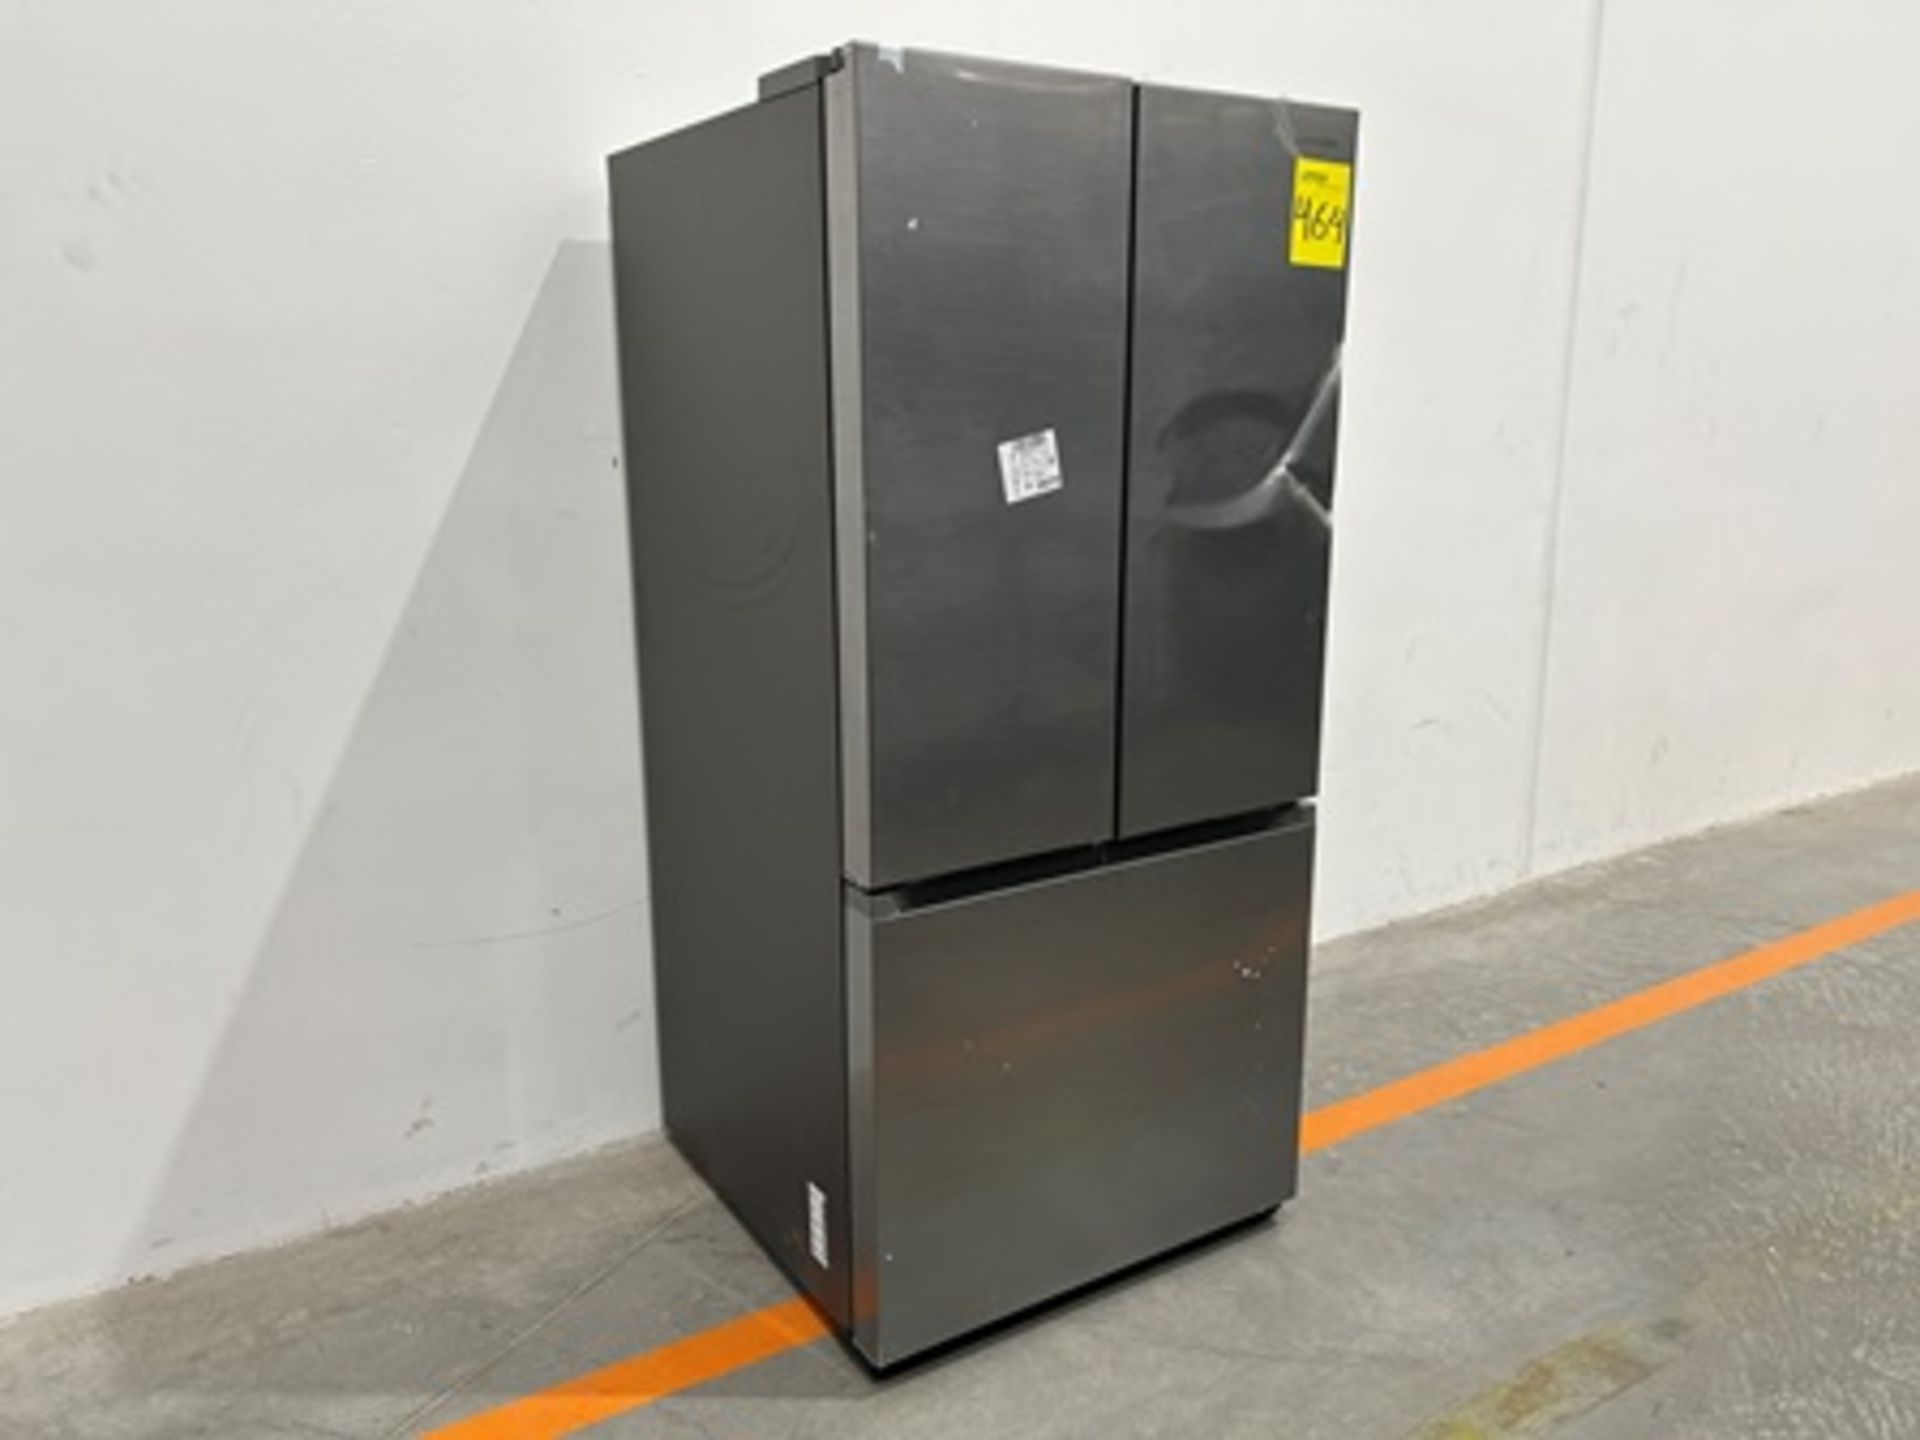 Refrigerador Marca SAMSUNG, Modelo RF25C5151S9, Serie 00679X, Color GRIS (equipo de devolución) - Image 2 of 5